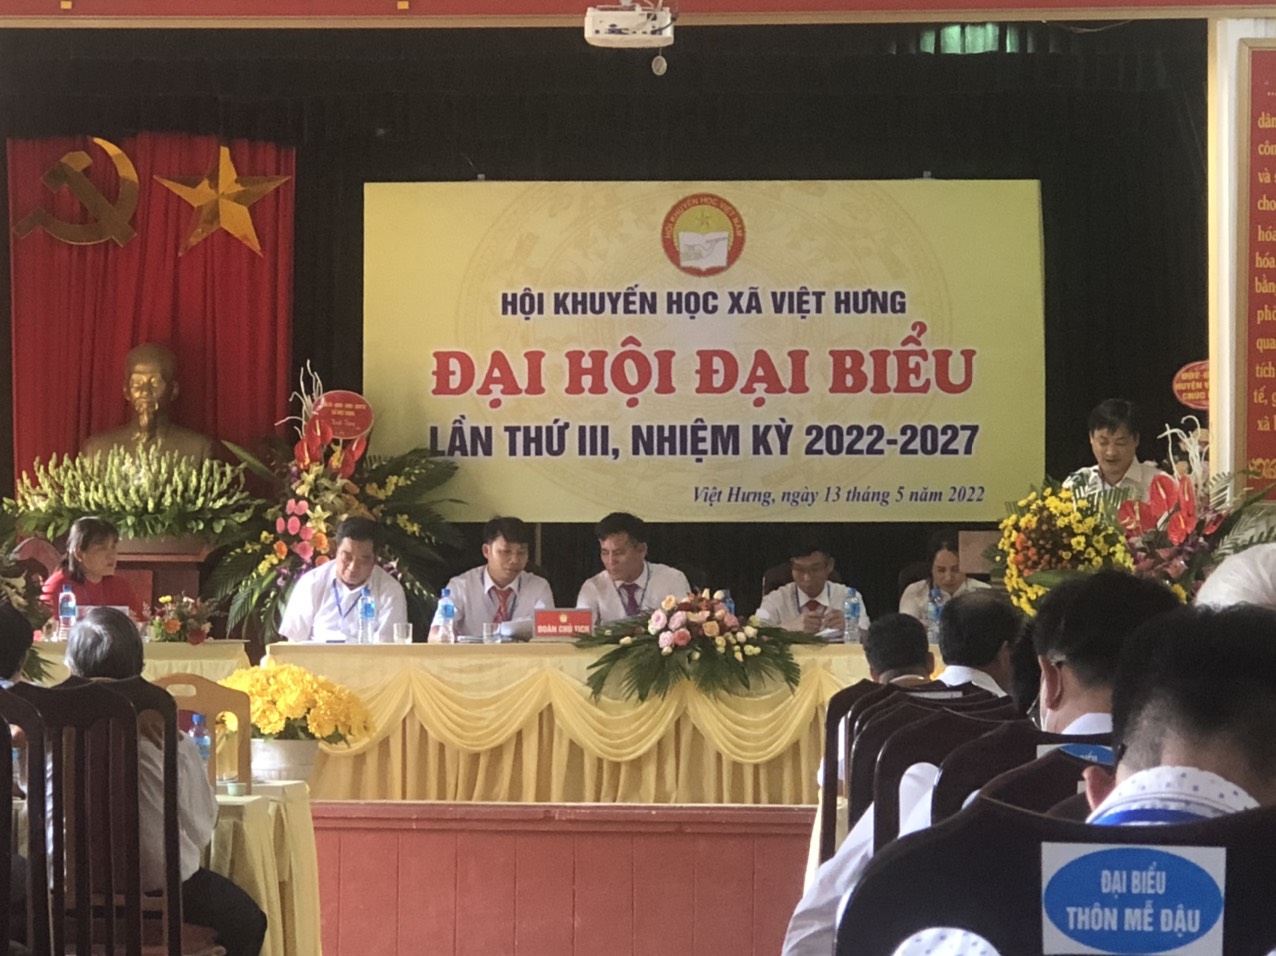 Đại hội đại biểu Hội Khuyến học xã Việt  Hưng khóa III, nhiệm kỳ 2022-2027